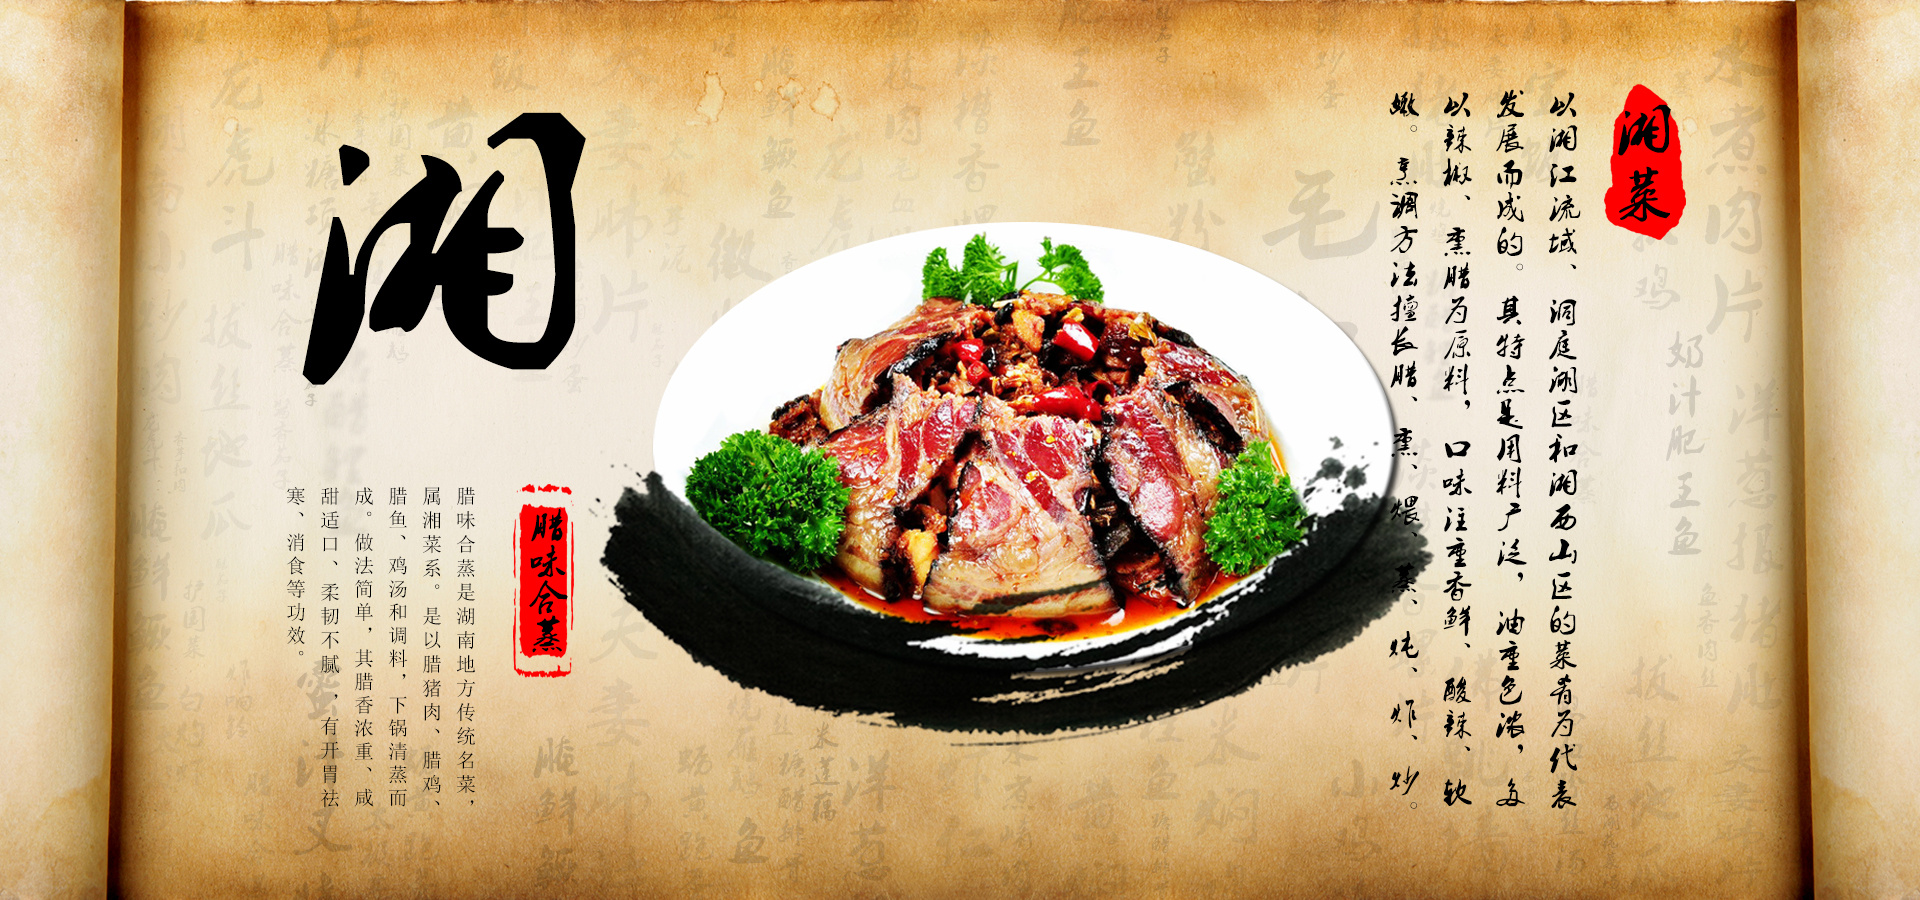 中国八大菜系和50道代表菜知识顺口溜 | 说明书网